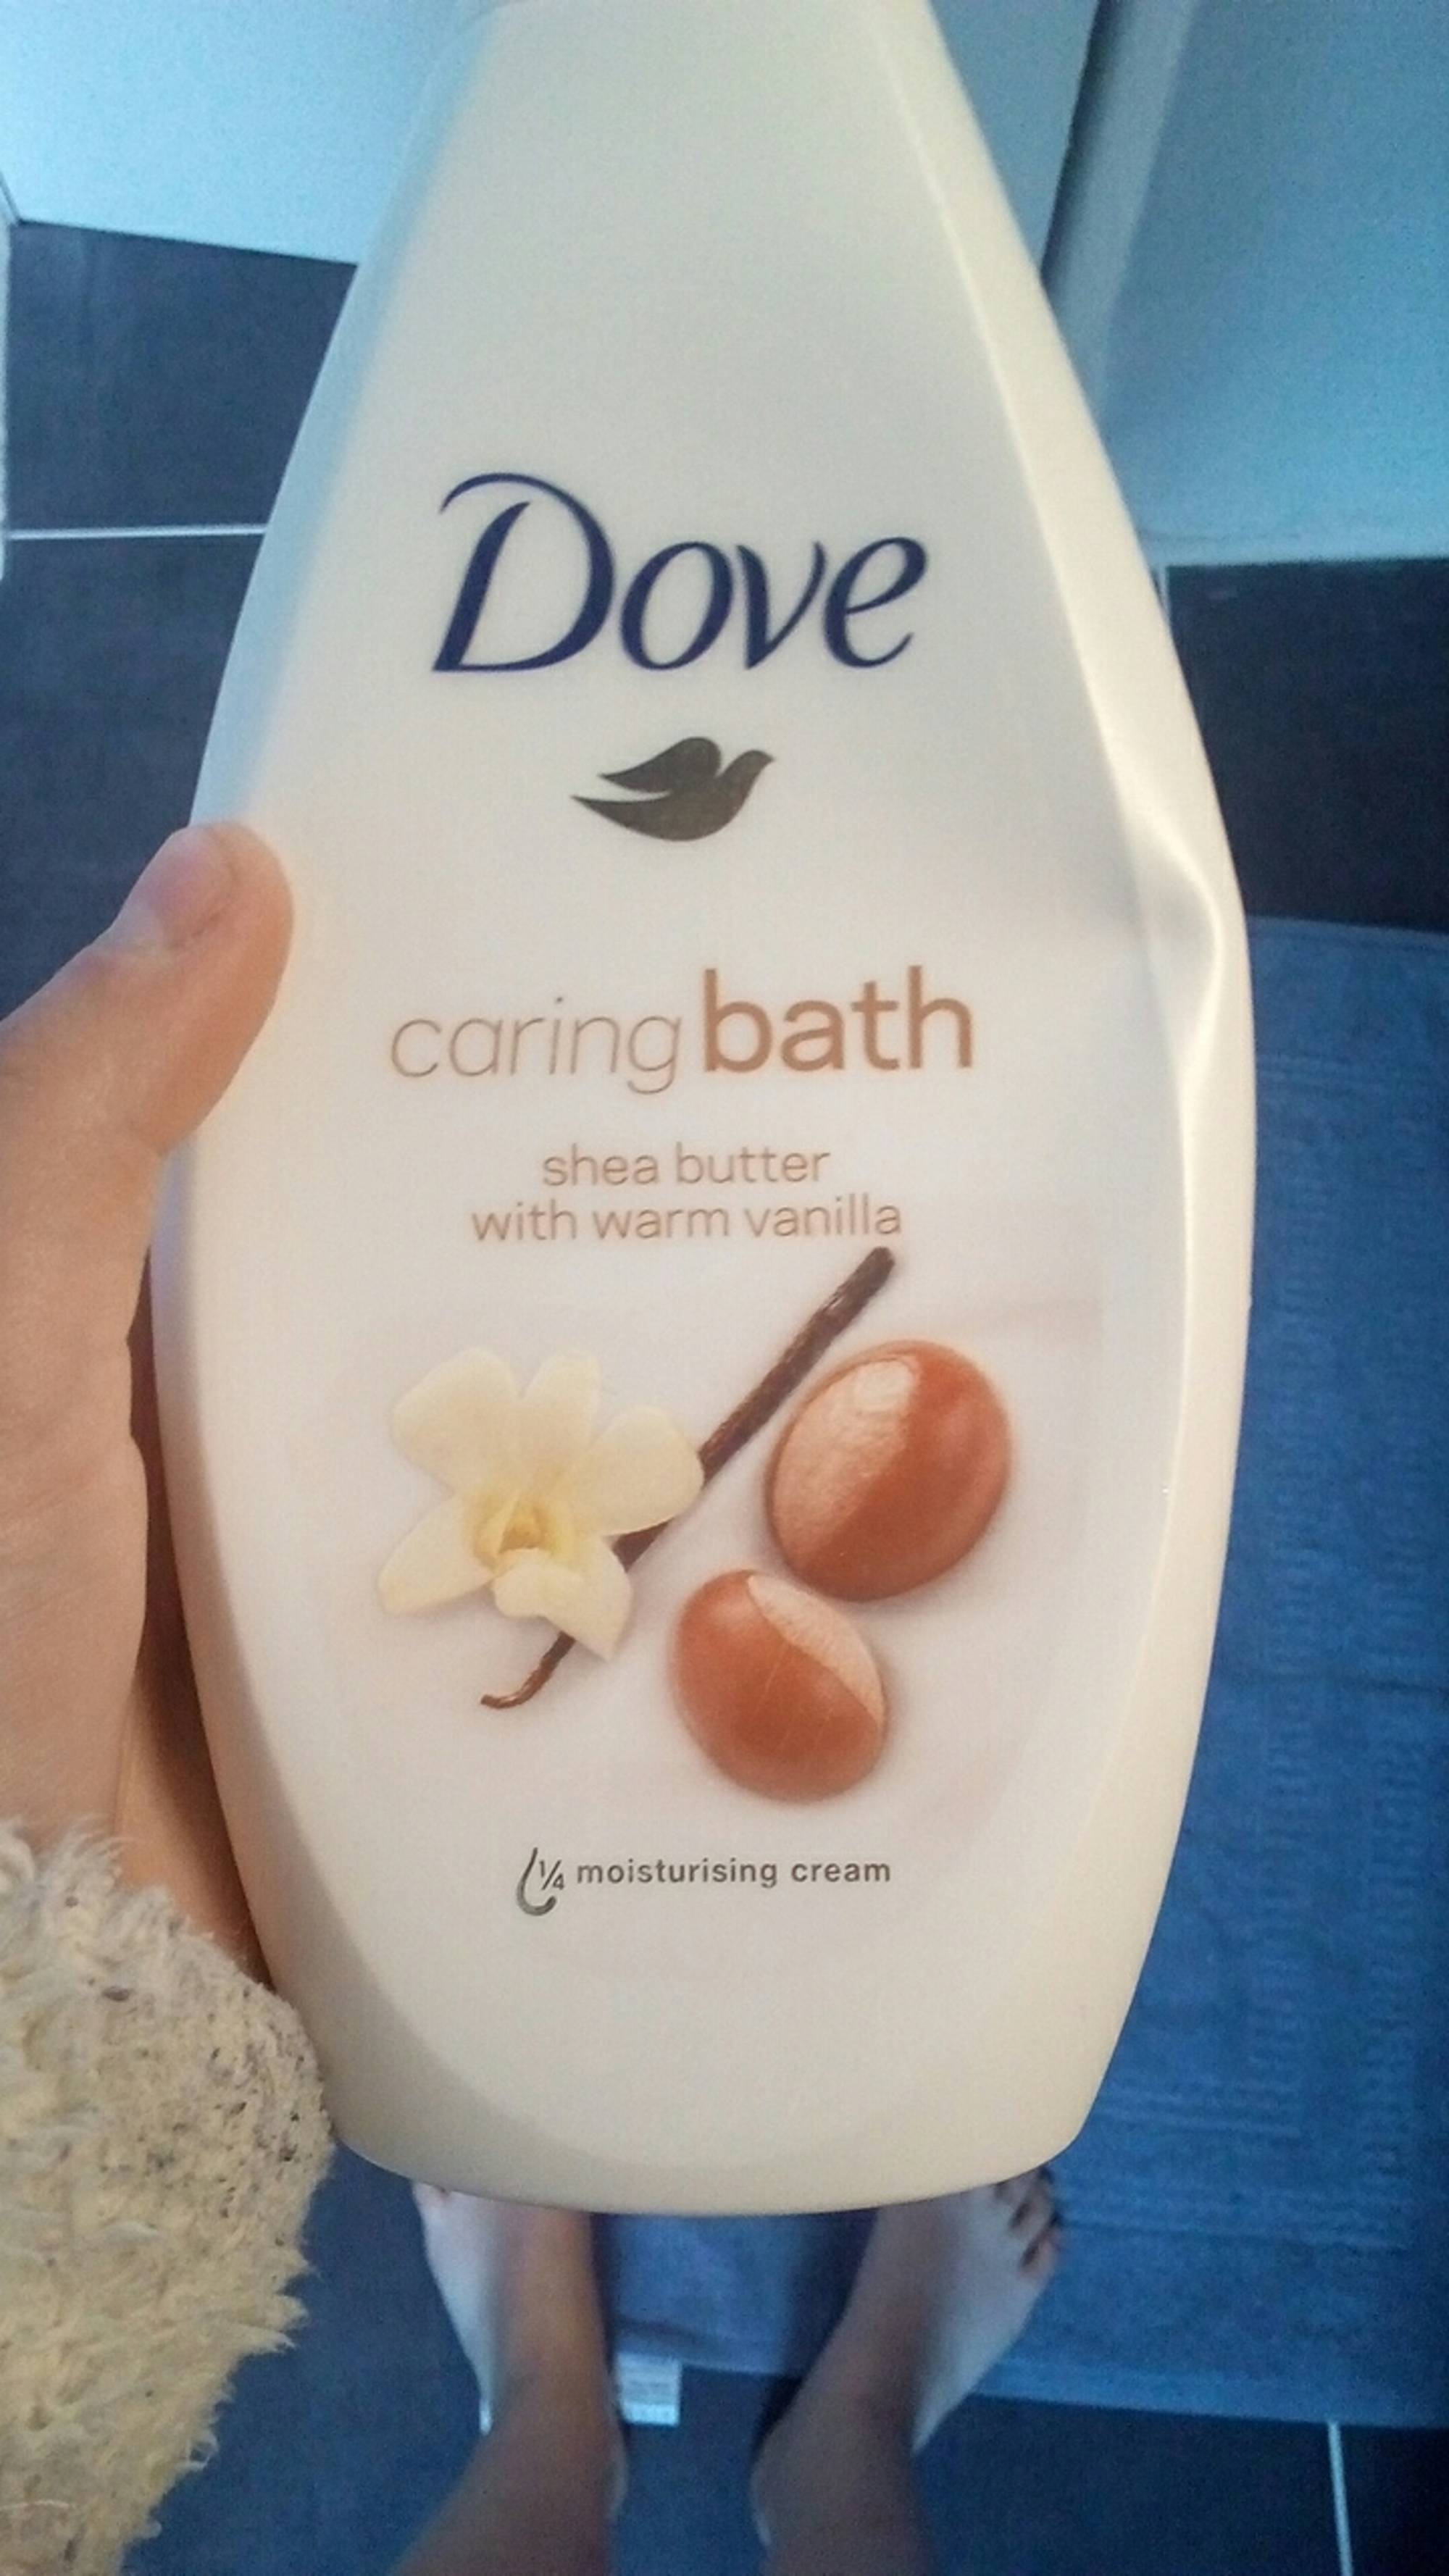 DOVE - Caring bath - Shea butter with warm vanilla